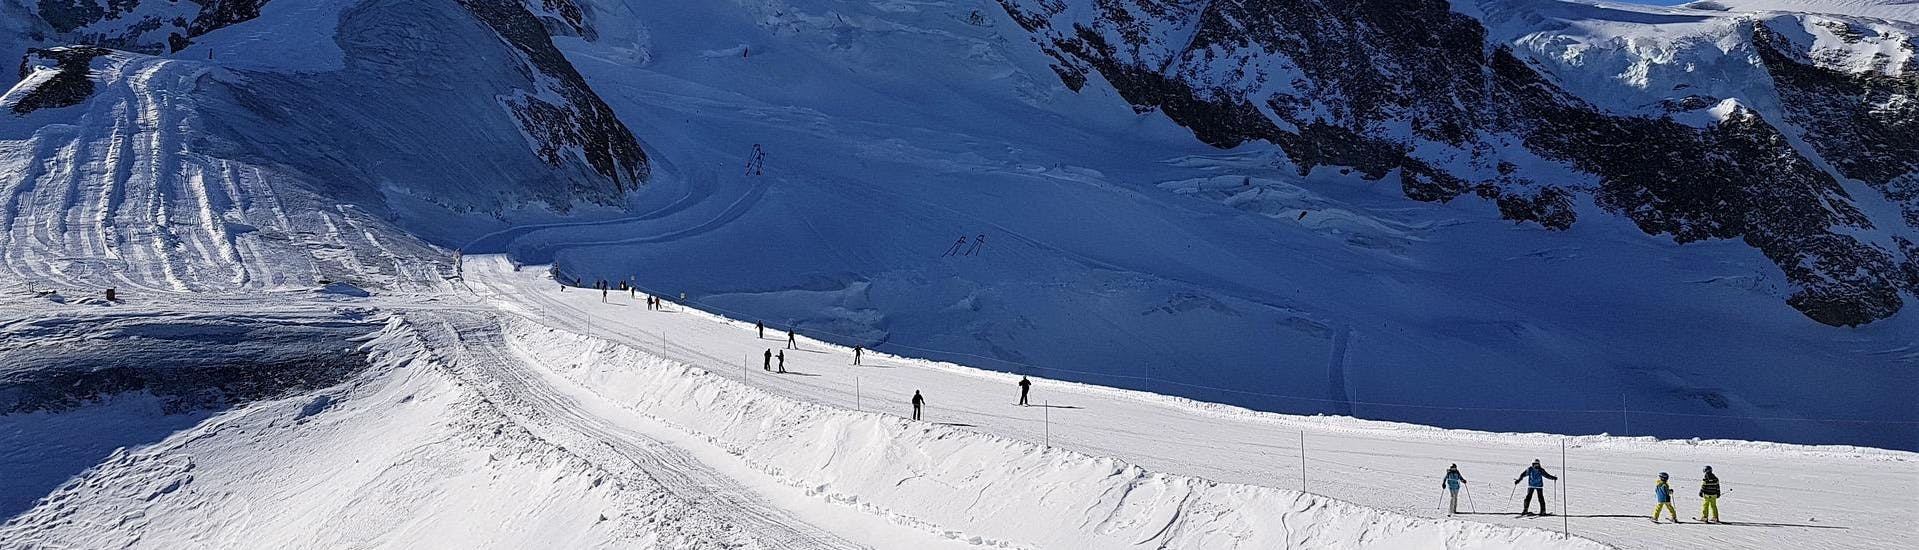 Adultos y niños esquiando en la estación de esquí de Saas Fee.